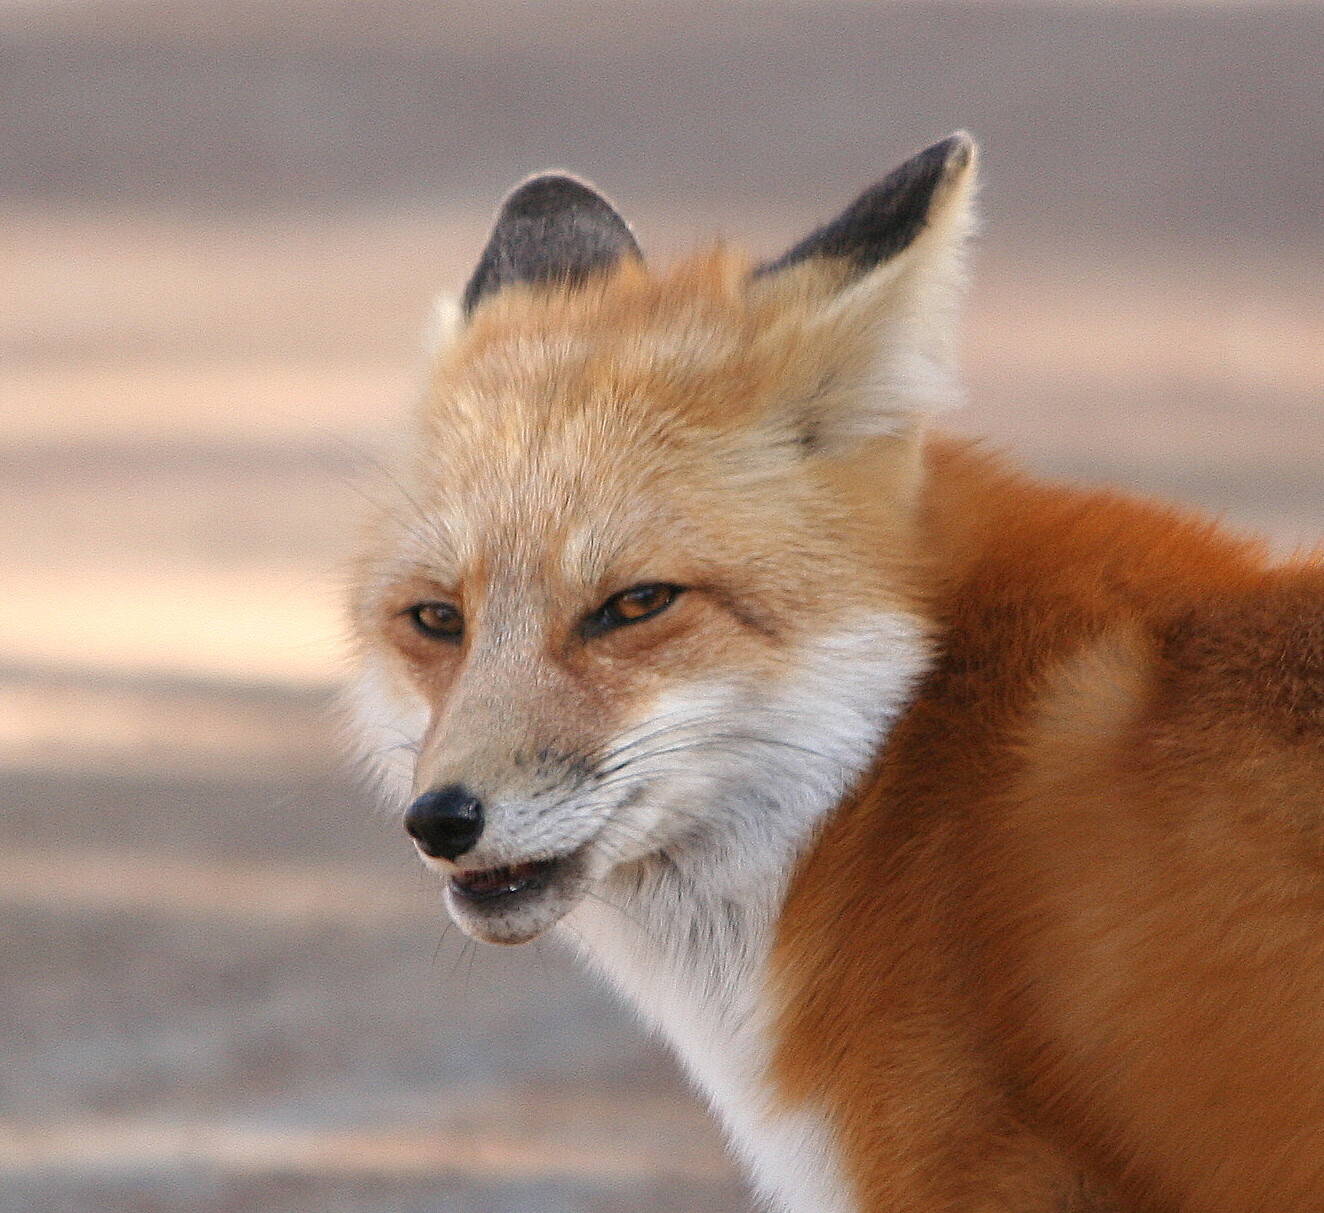 Who fox. #ВКОНТАКТЕ 16 лиса.